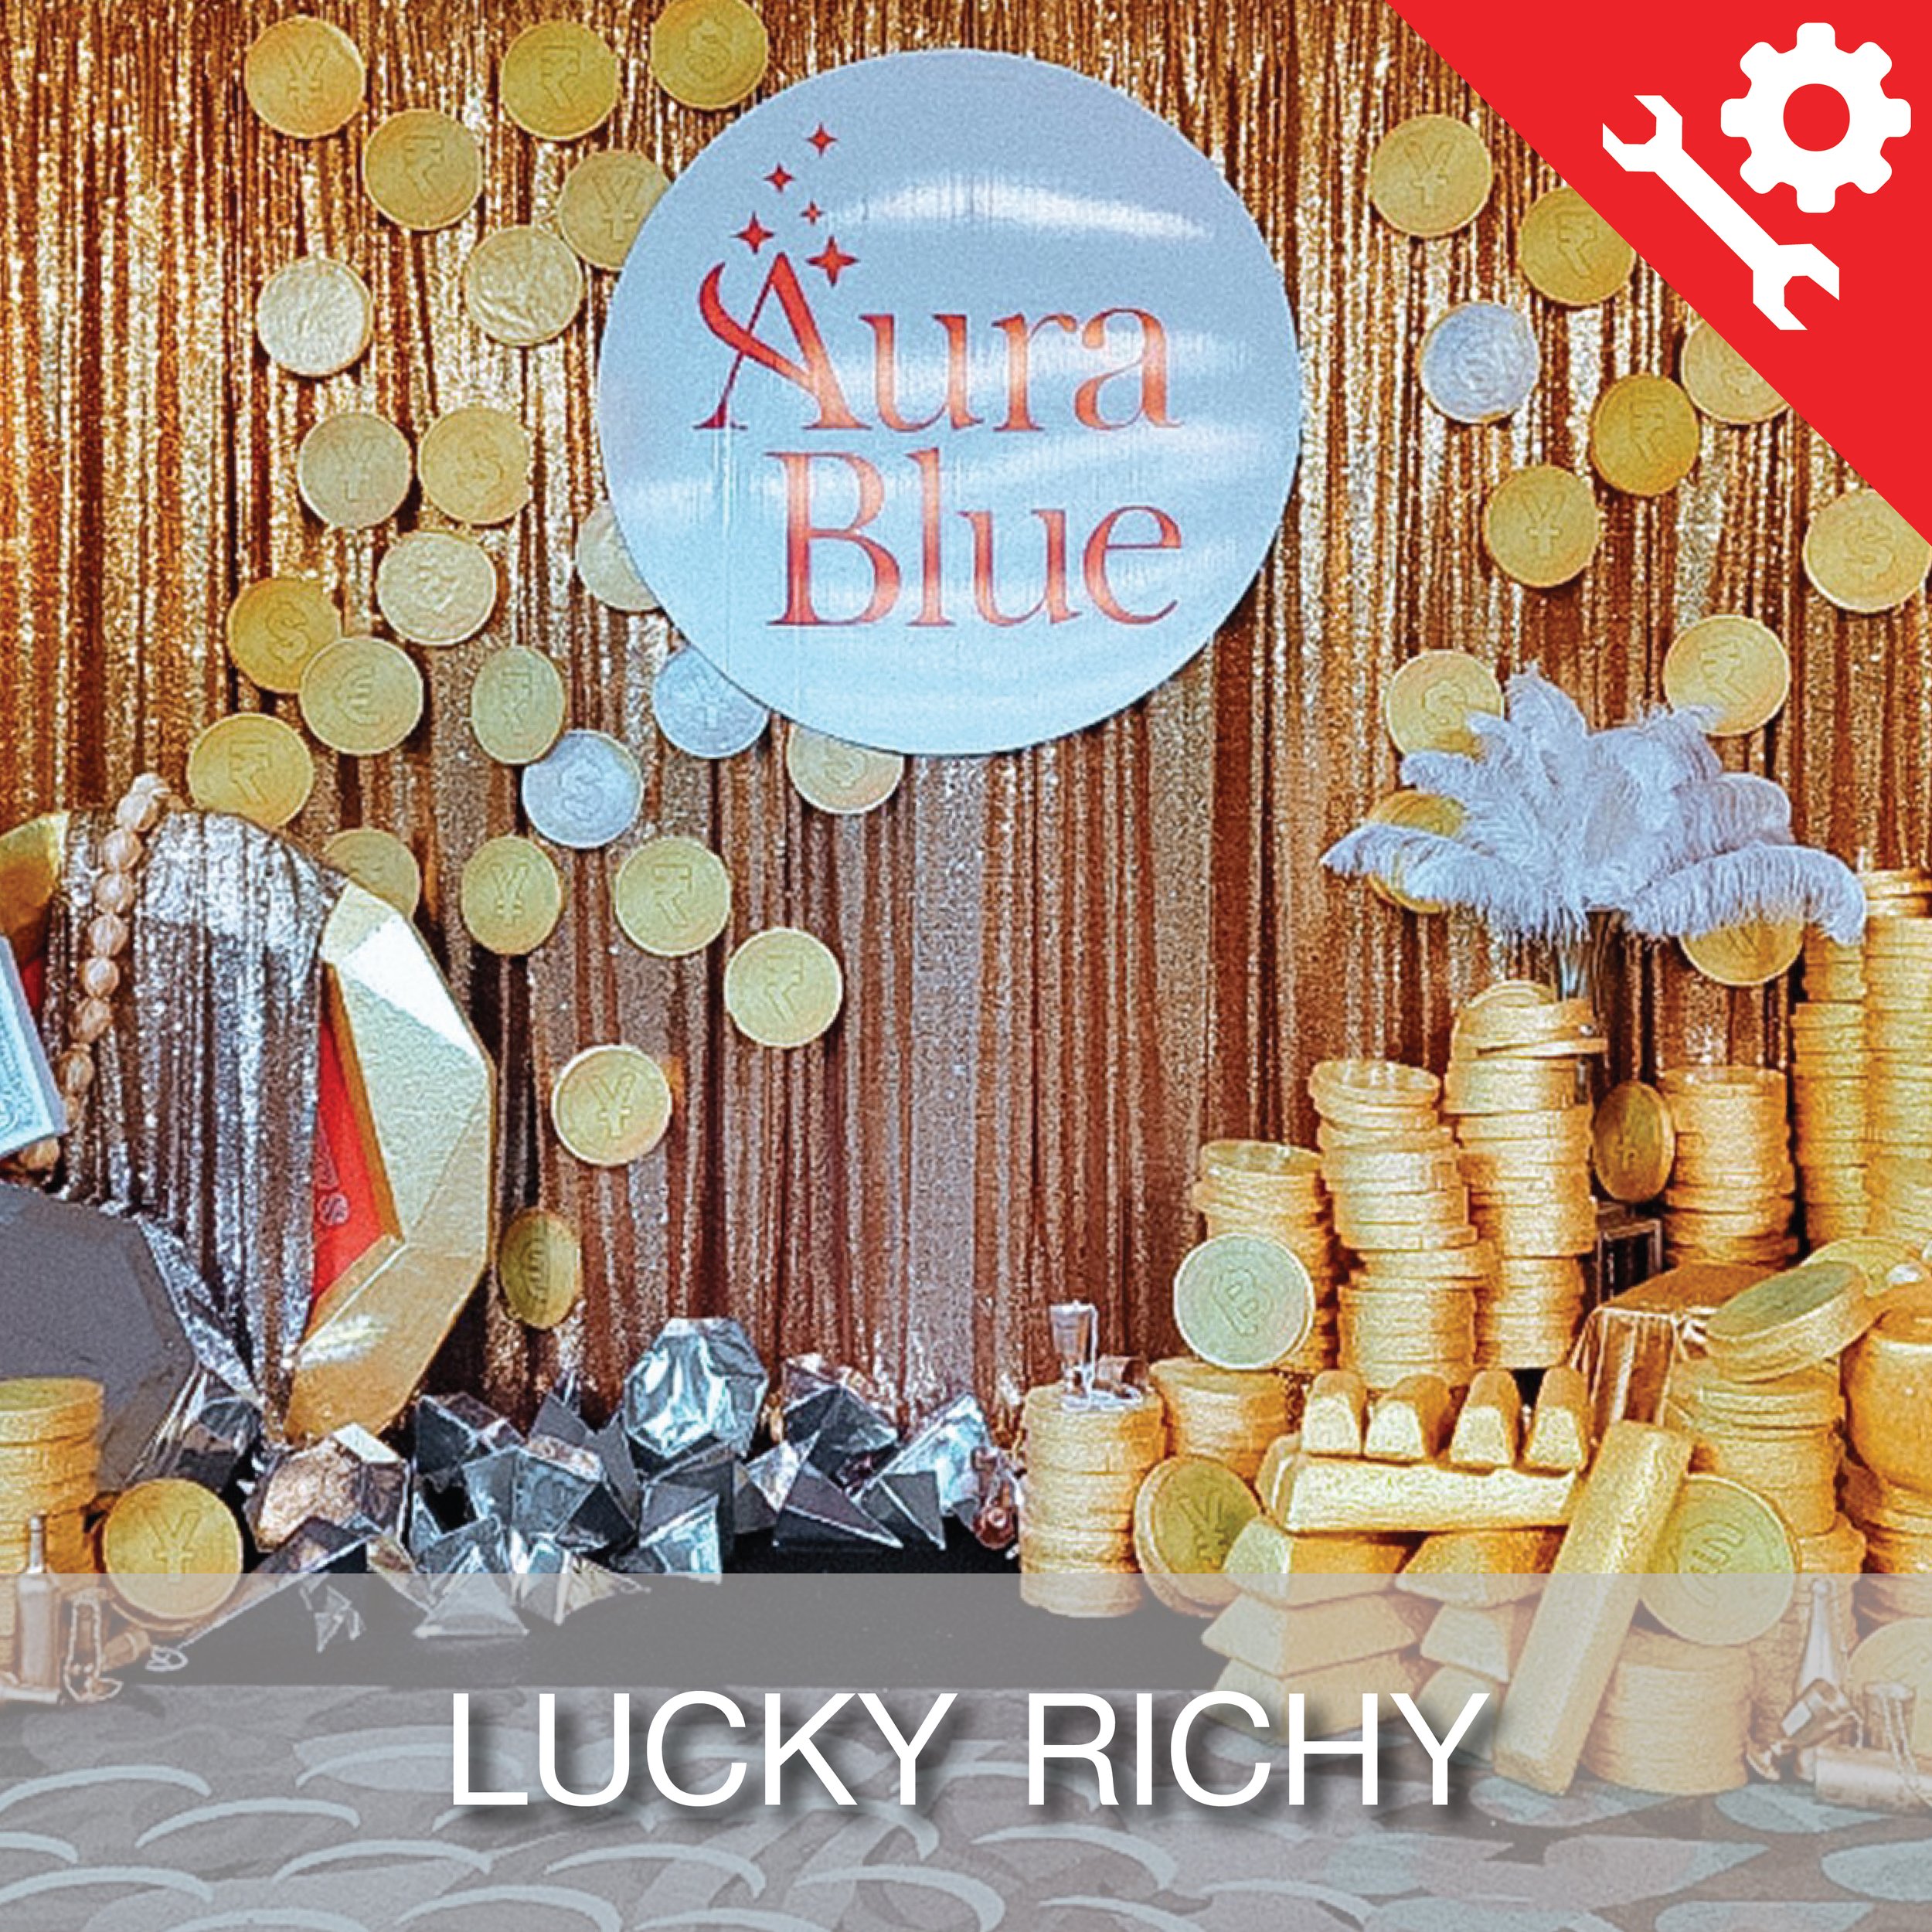 Cover_Manual-Lucky Richy-01.jpg